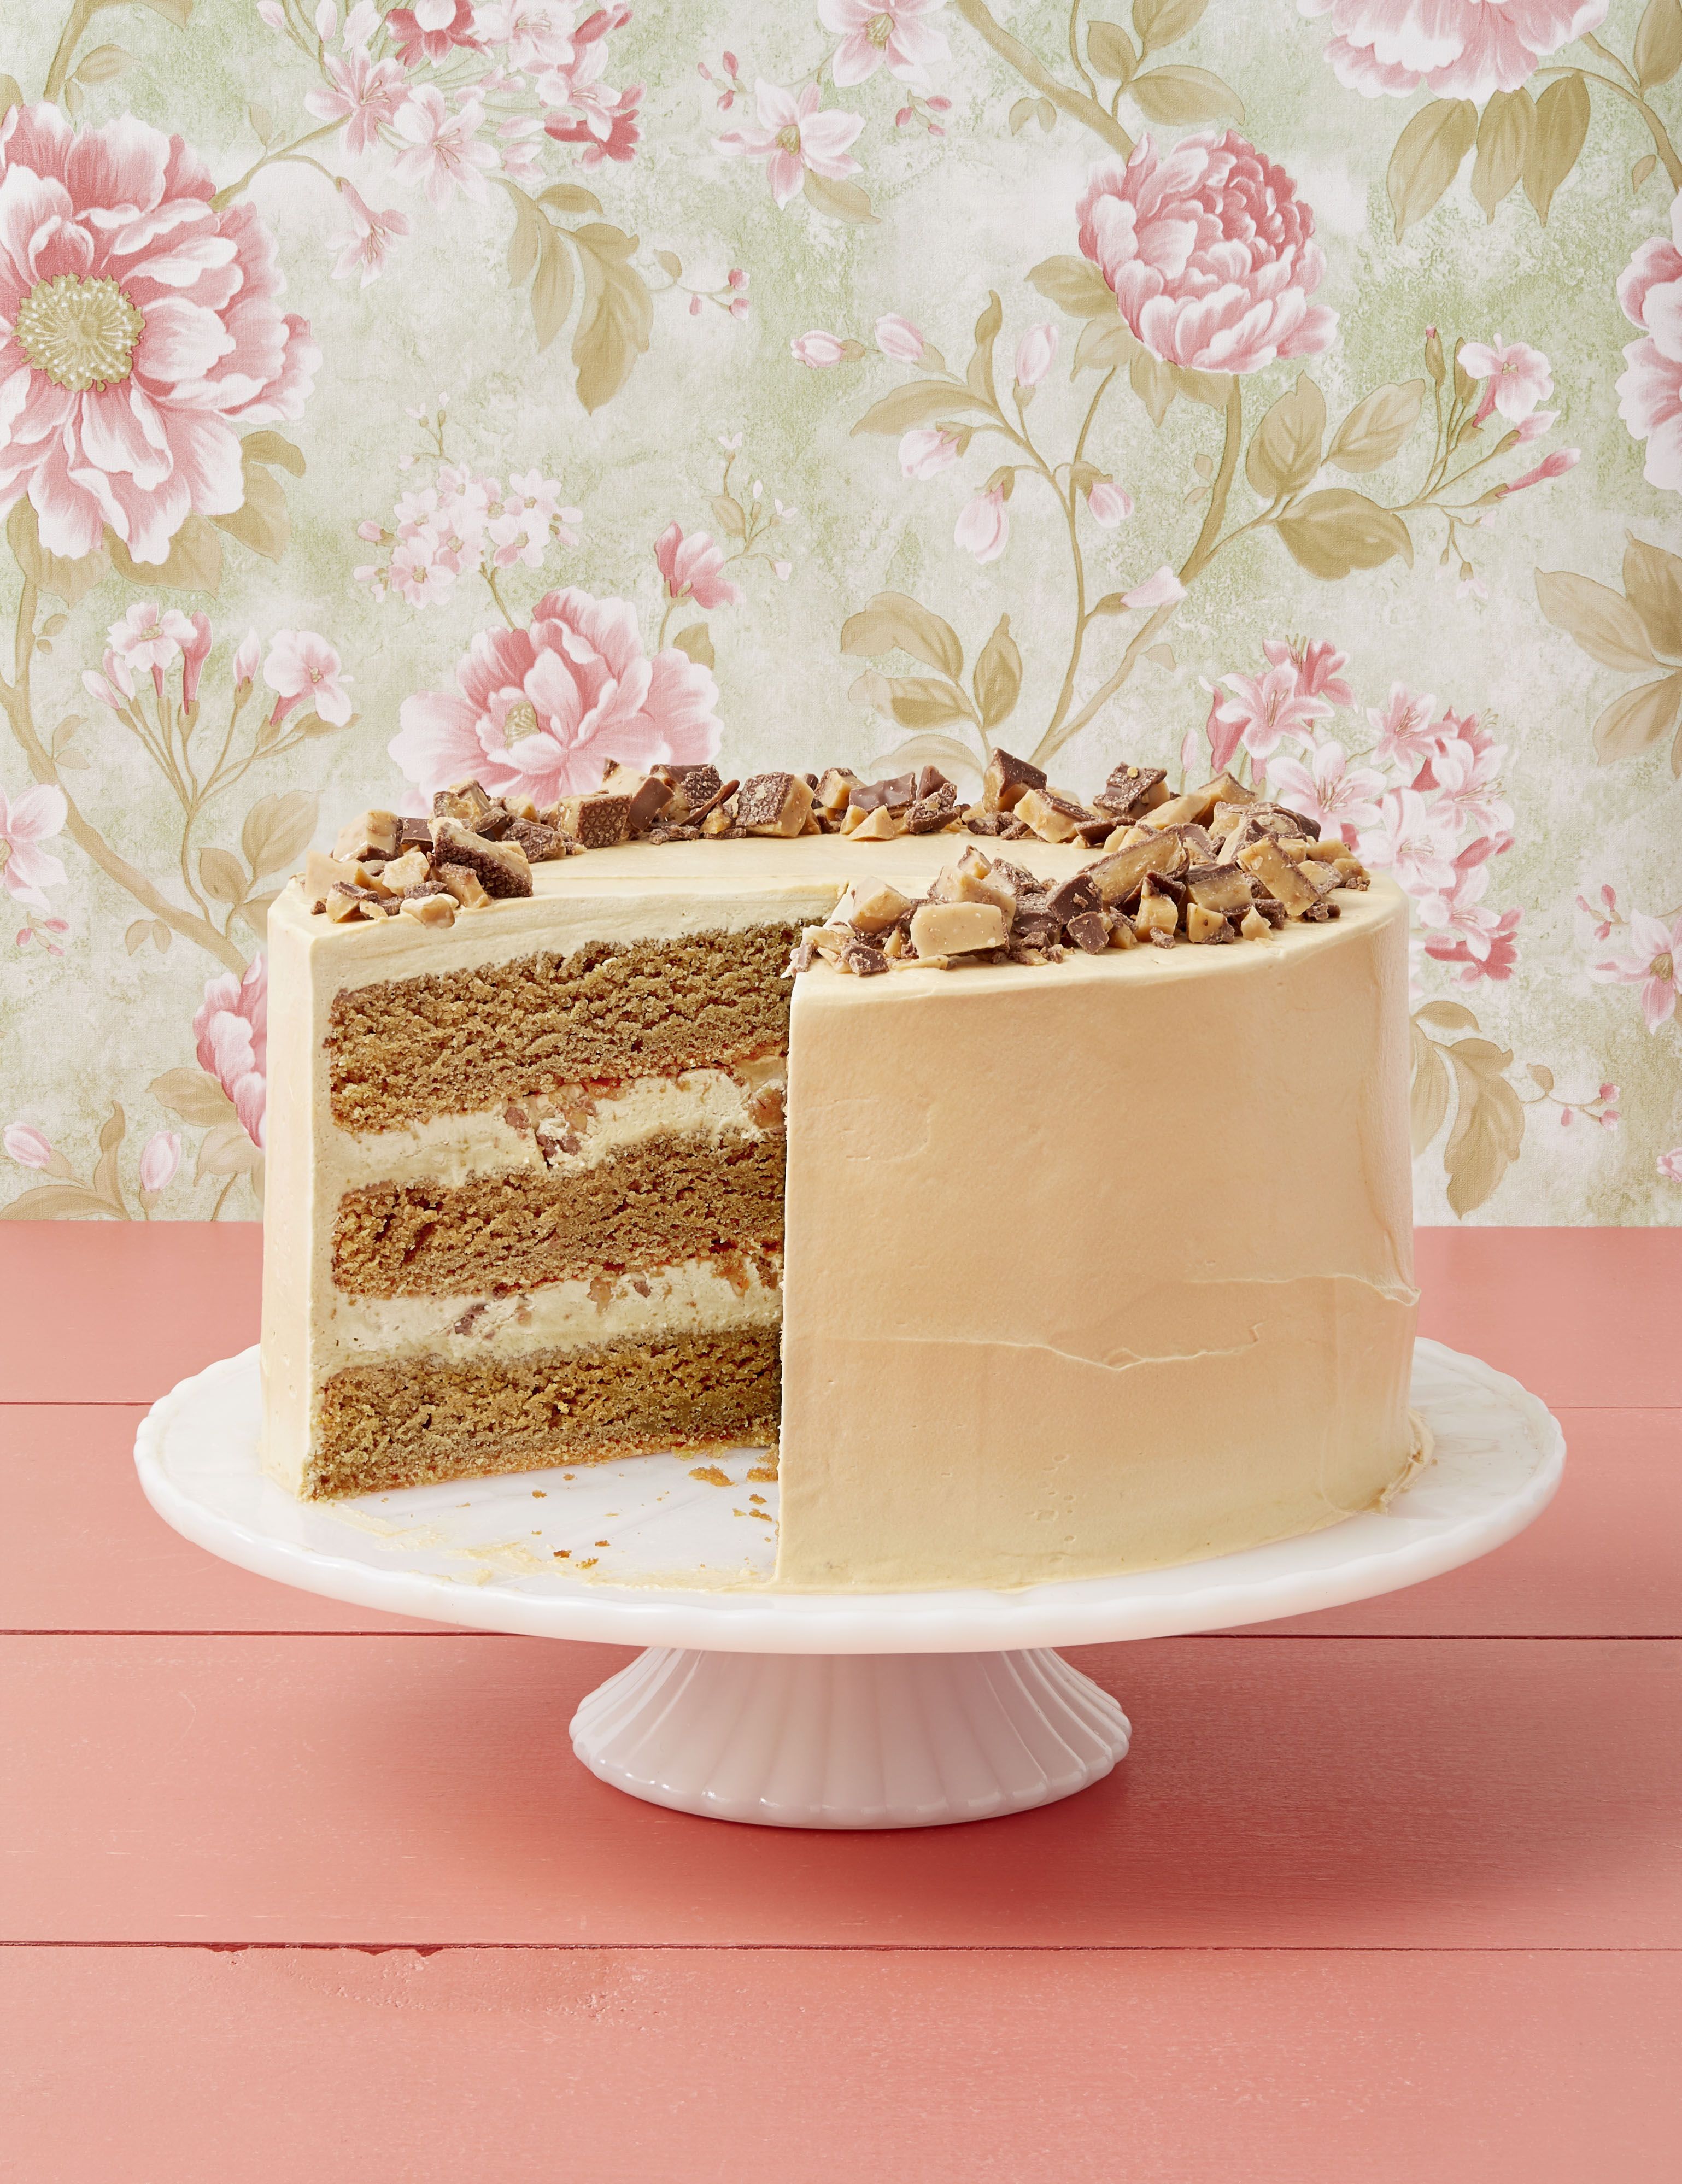 Paul Hollywood's Red Velvet Cake - The Great British Bake Off | The Great  British Bake Off